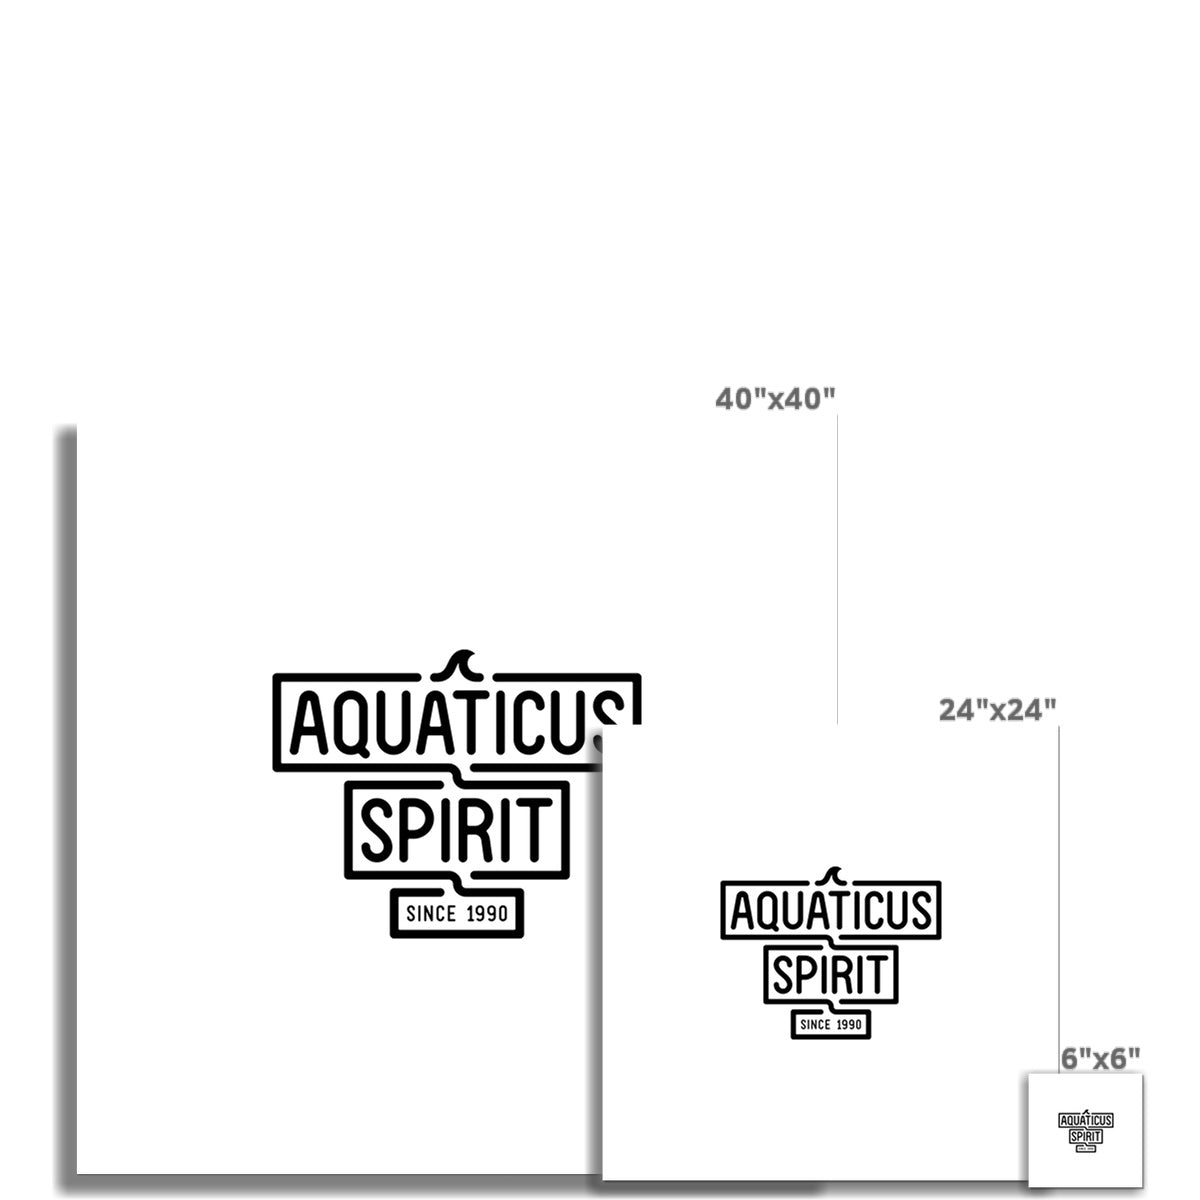 AQUA -  02 - Aquaticus Spirit - Rolled Canvas